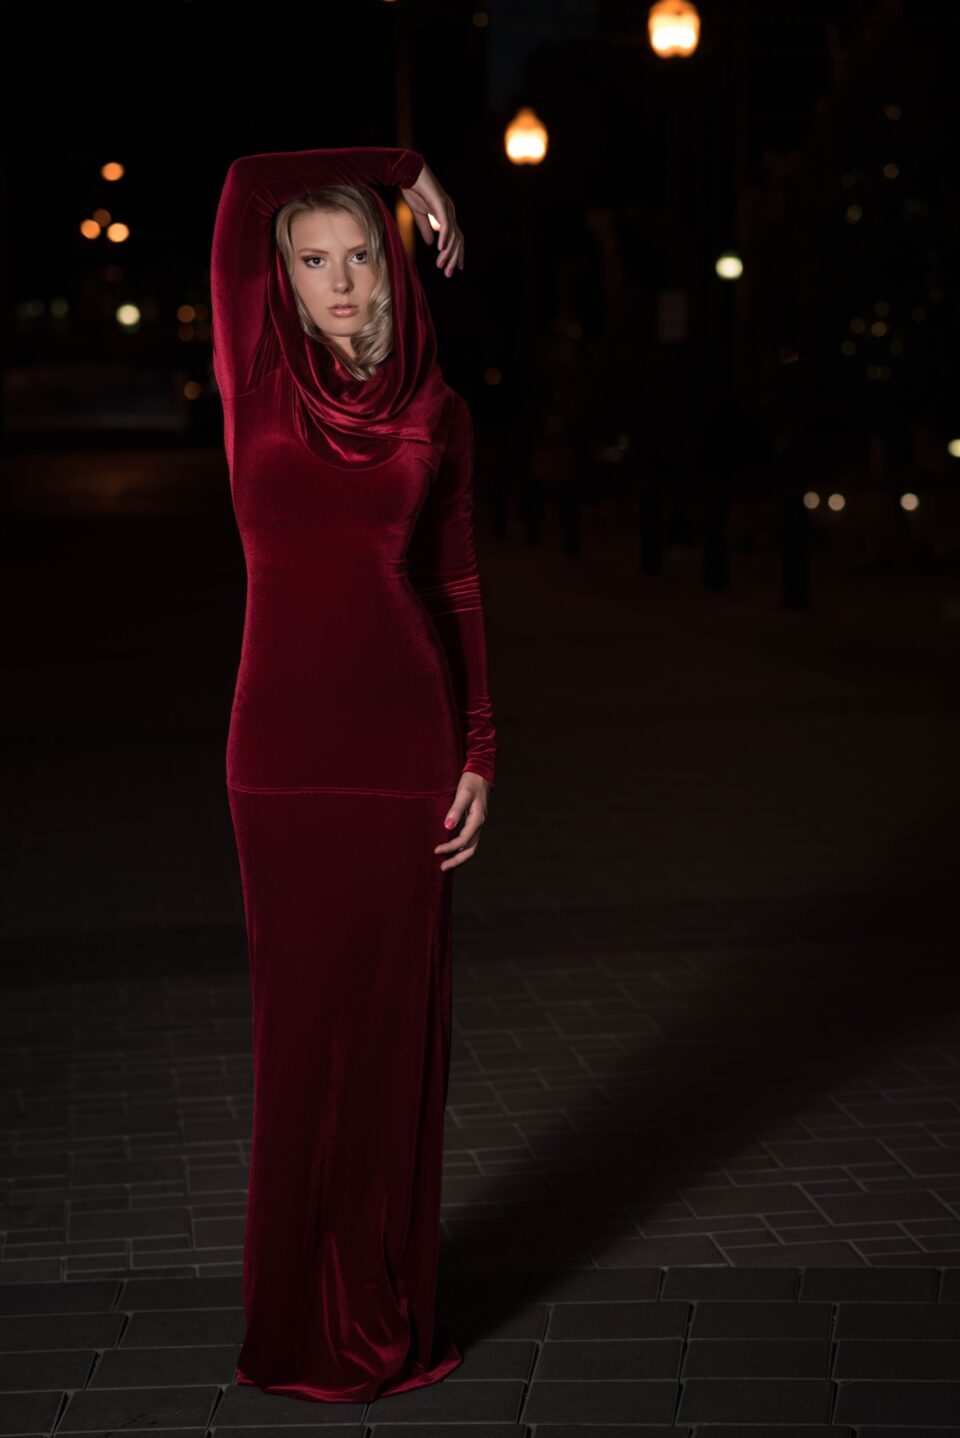 Red velvet hooded long sleeve dress.